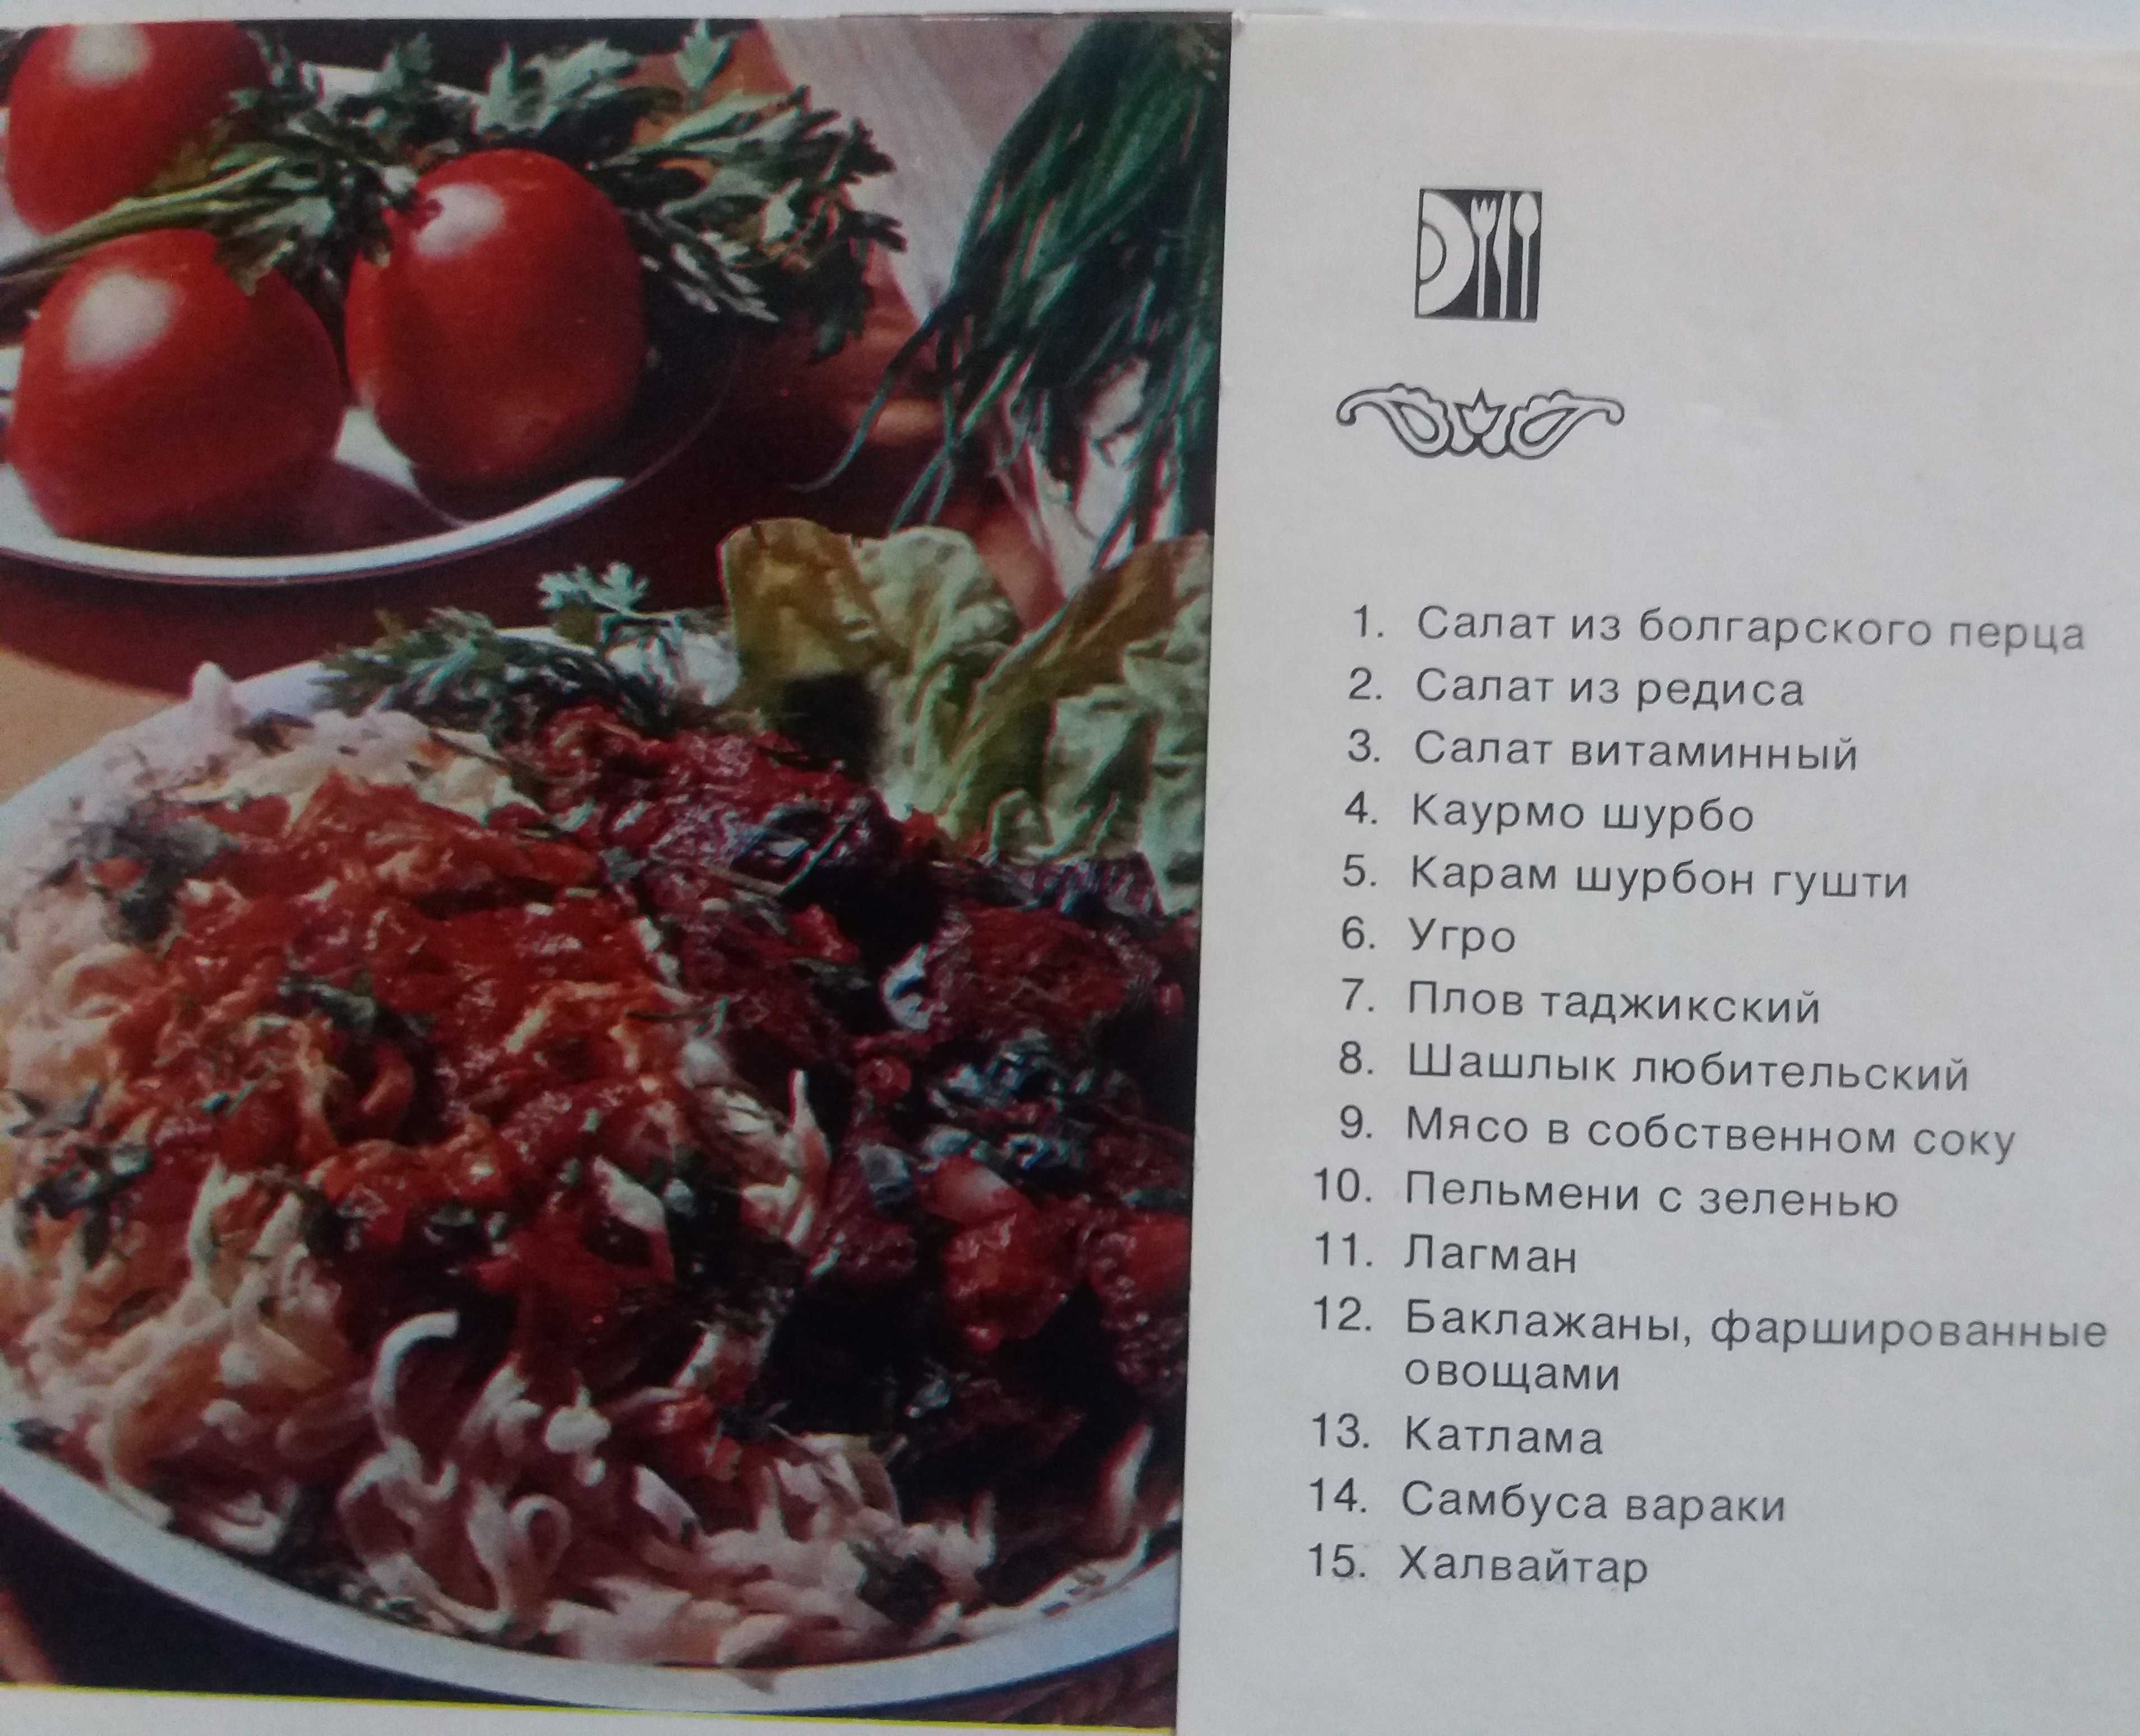 магия прянностей и соусов и блюда таджикской кухни